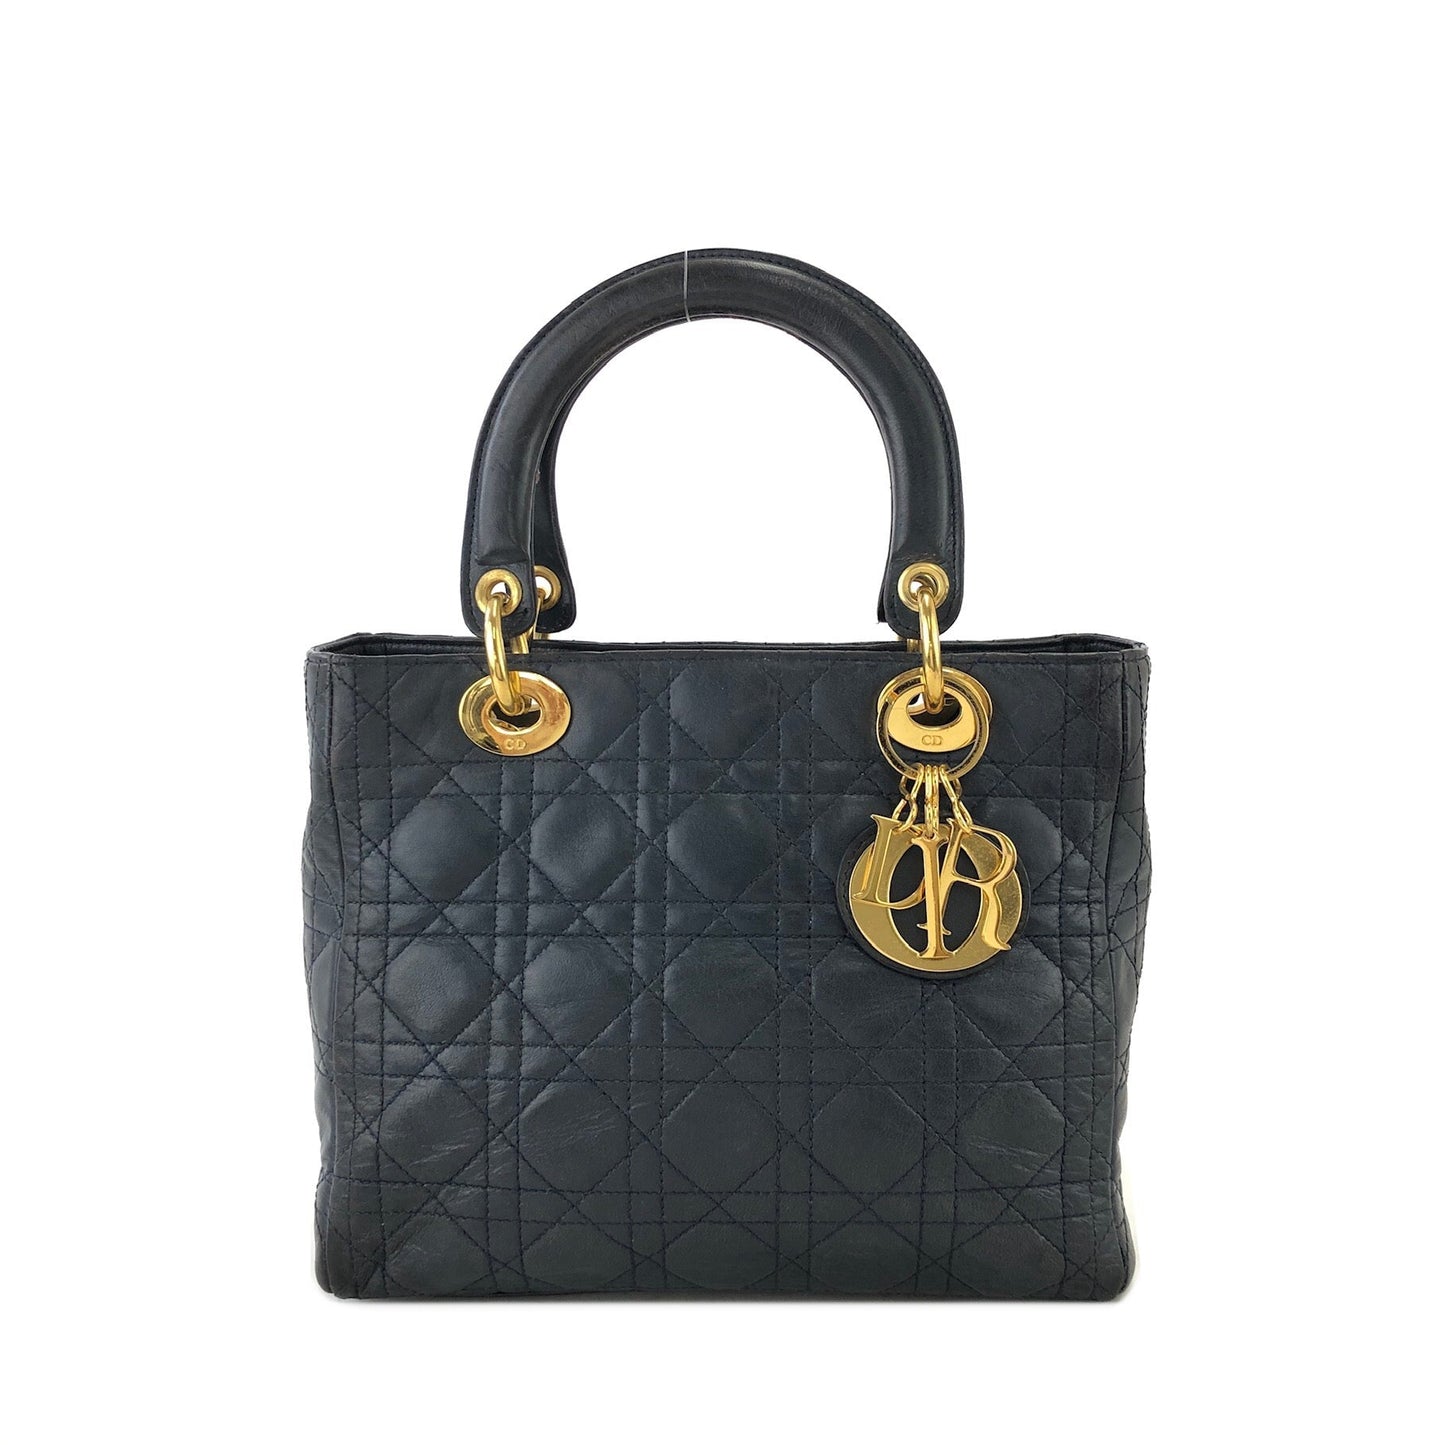 Christian Dior Cannage Lady dior Leather Handbag navy 48dafg